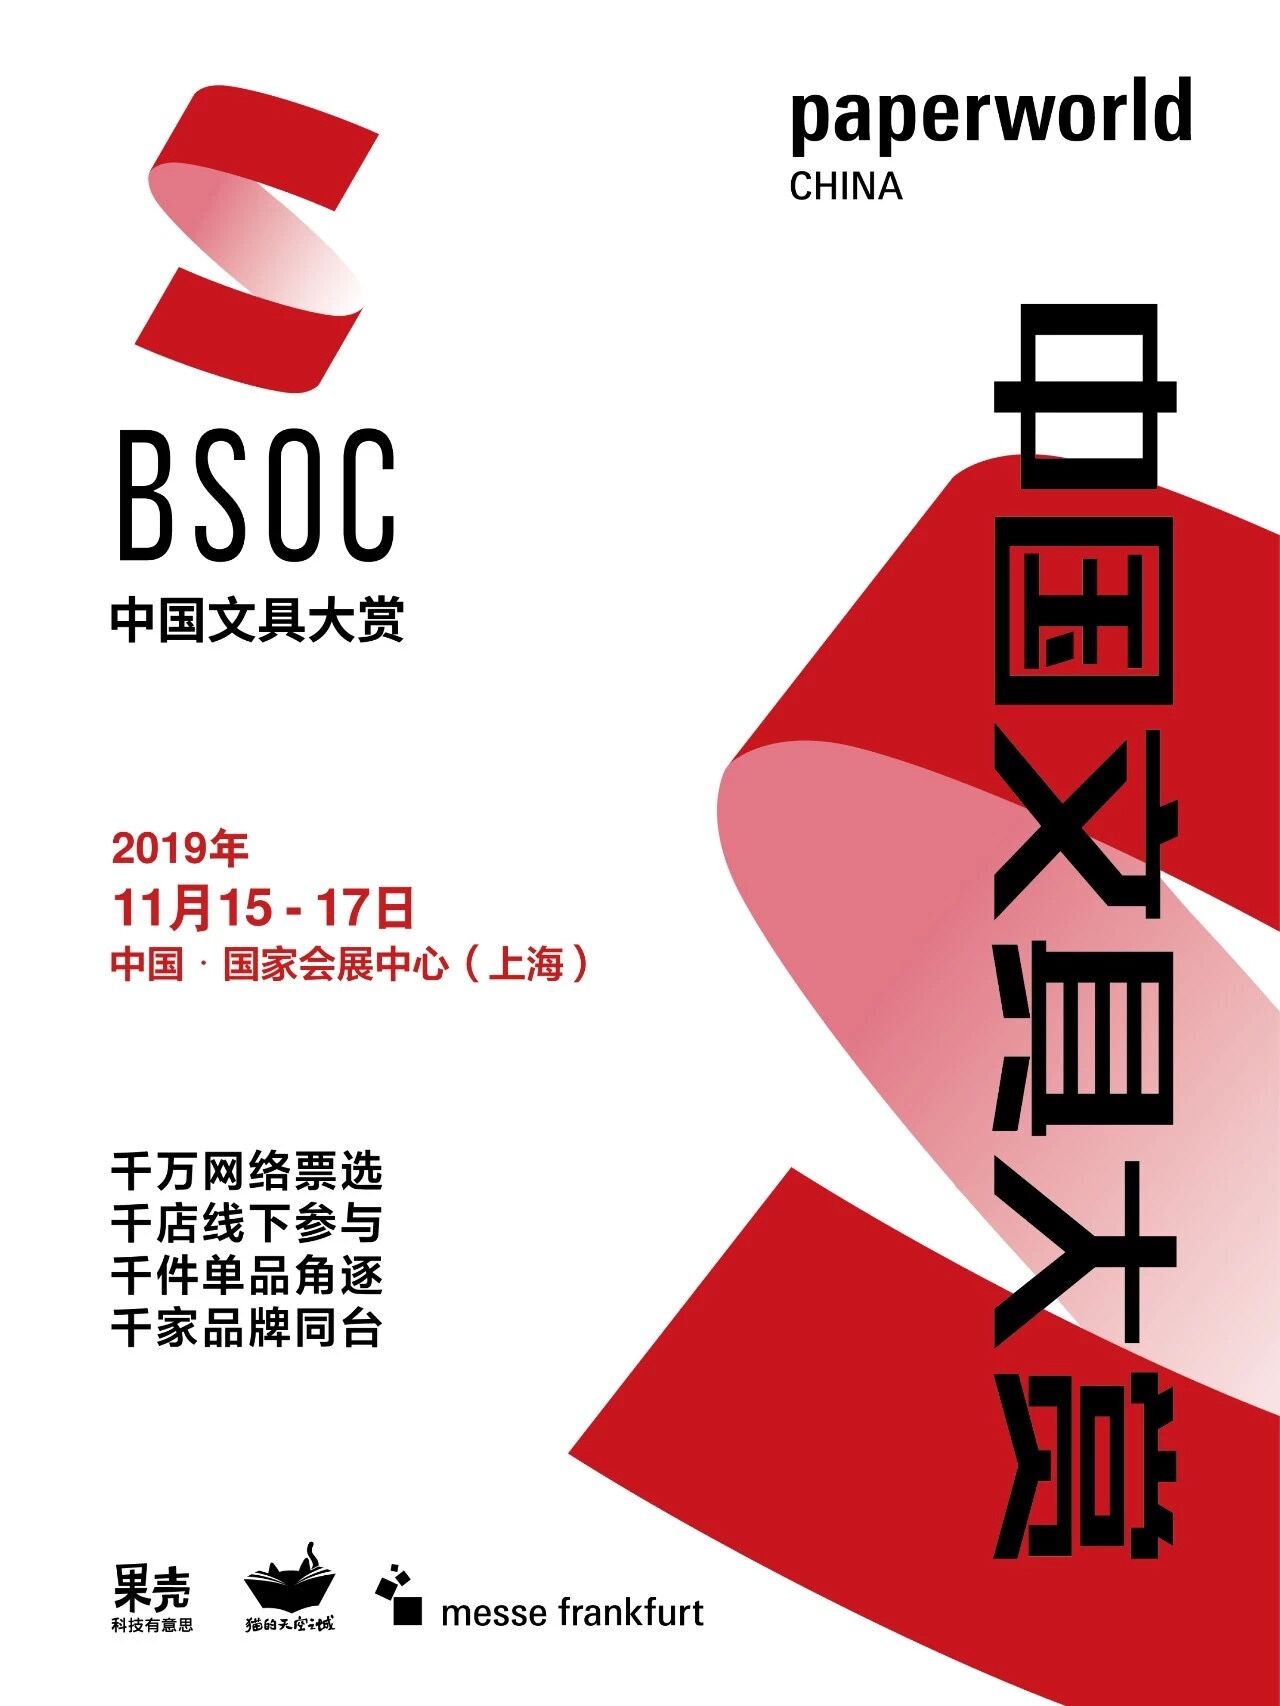 Paperworld China 2019：第二届中国文具大赏报名正式启动